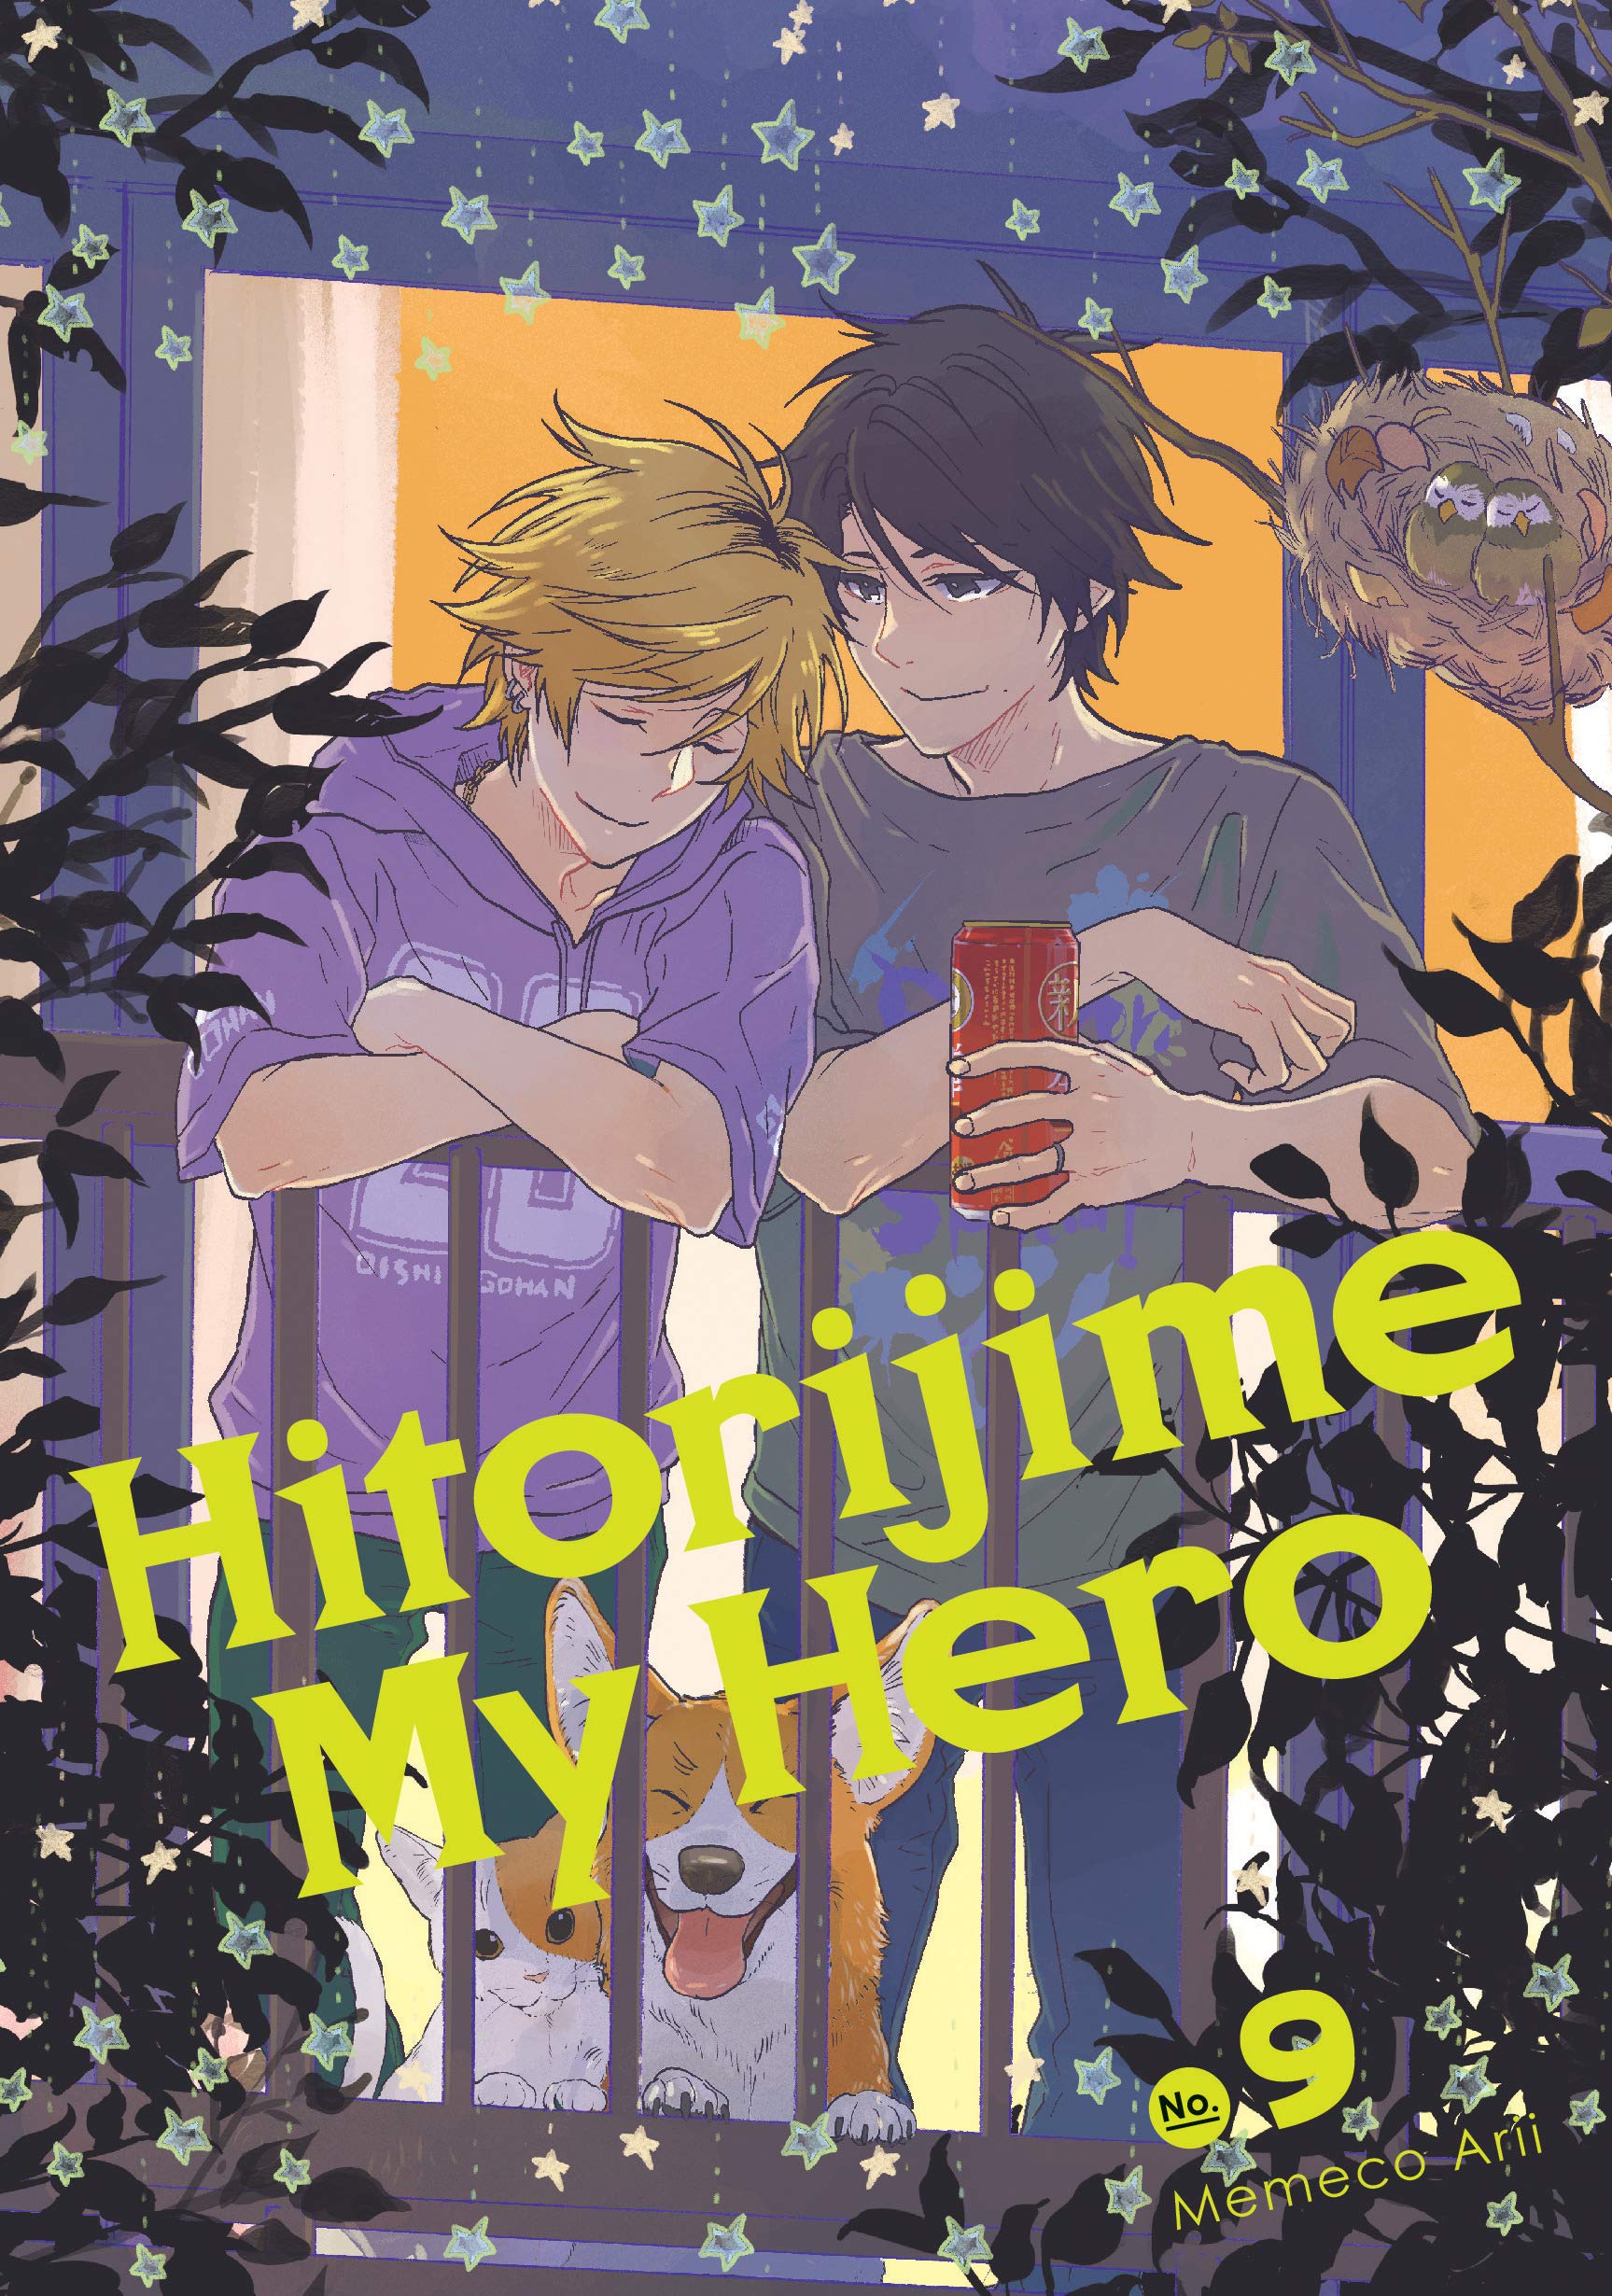 Hitorijime My Hero - Volume 9 | Memeco Arii